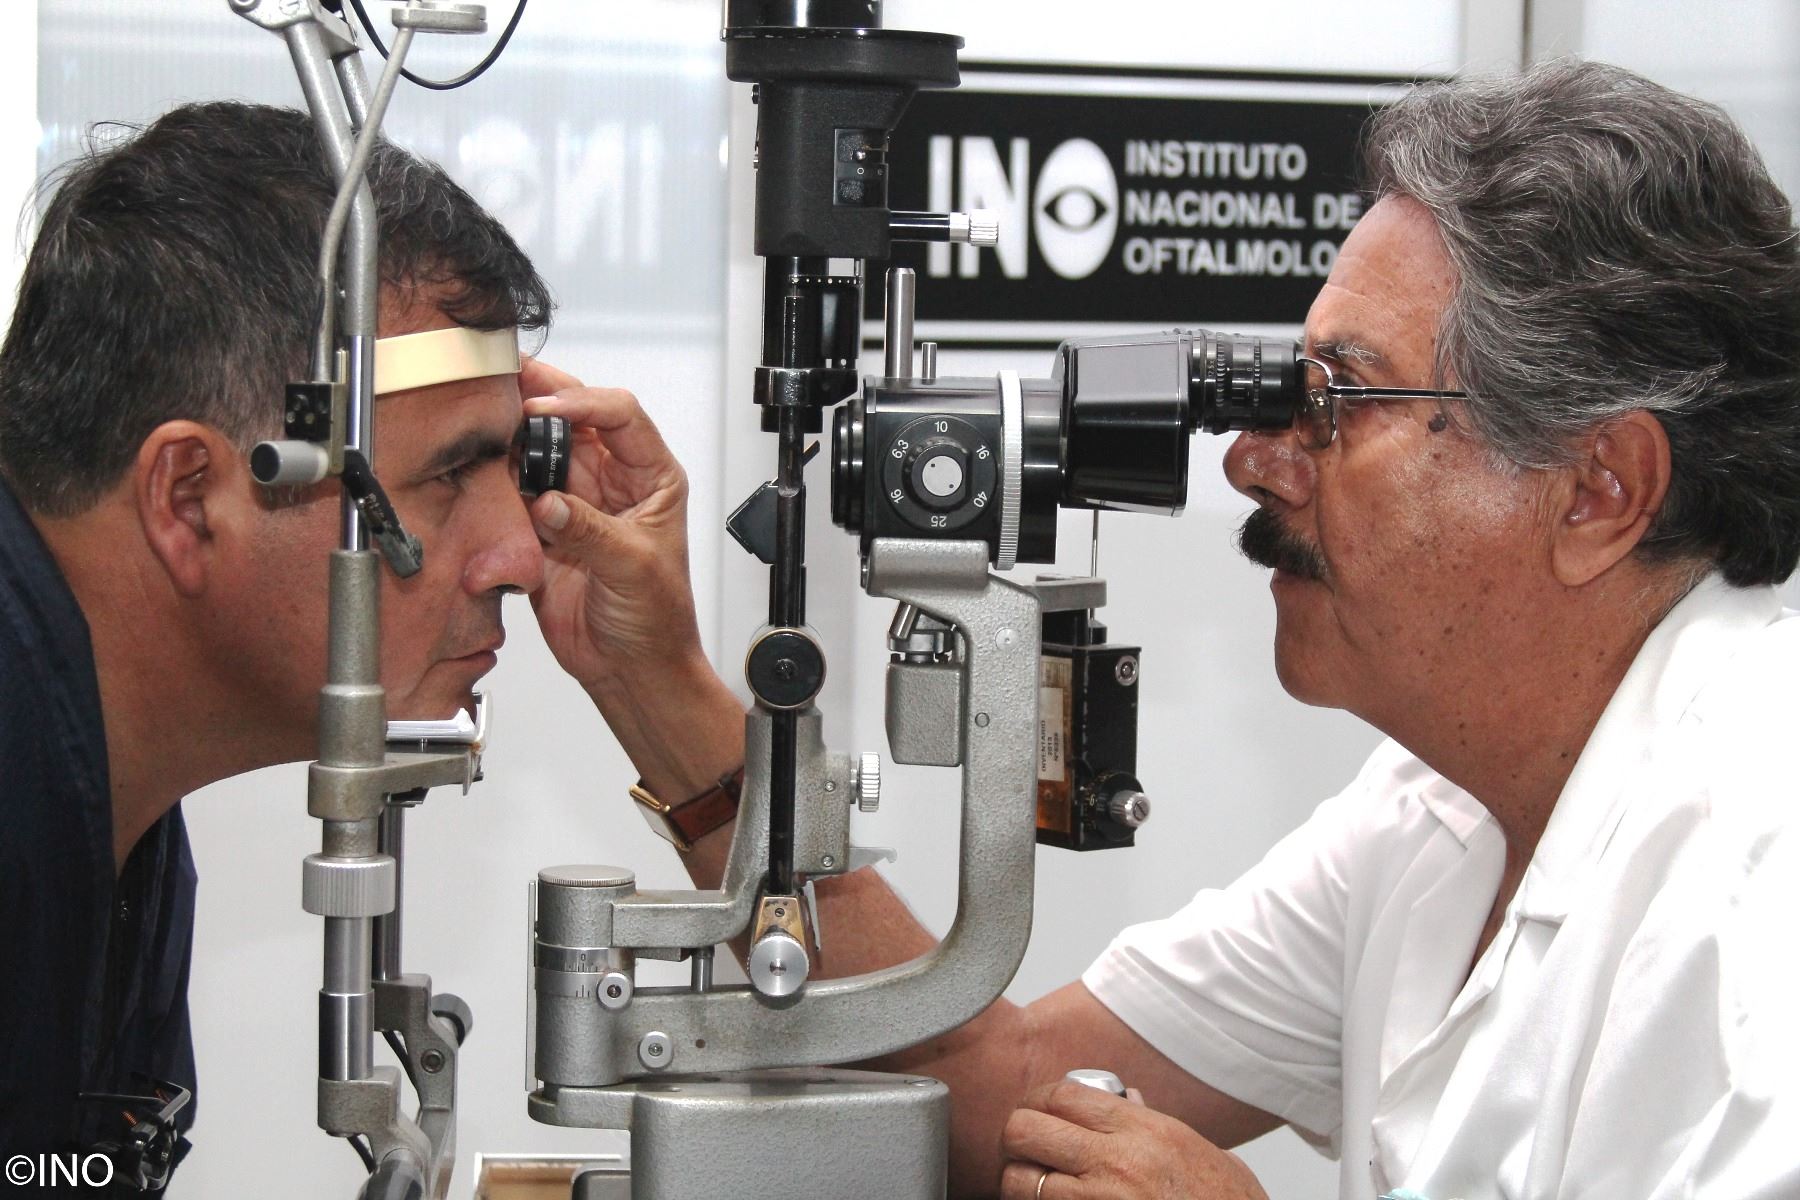 Una de las cirugías oculares más frecuentes en el INO es la catarata, la cual ocurre cuando el cristalino, que es un lente natural que tenemos dentro del ojo, se vuelve opaco con la edad, ocasionando visión borrosa. ANDINA/Difusión